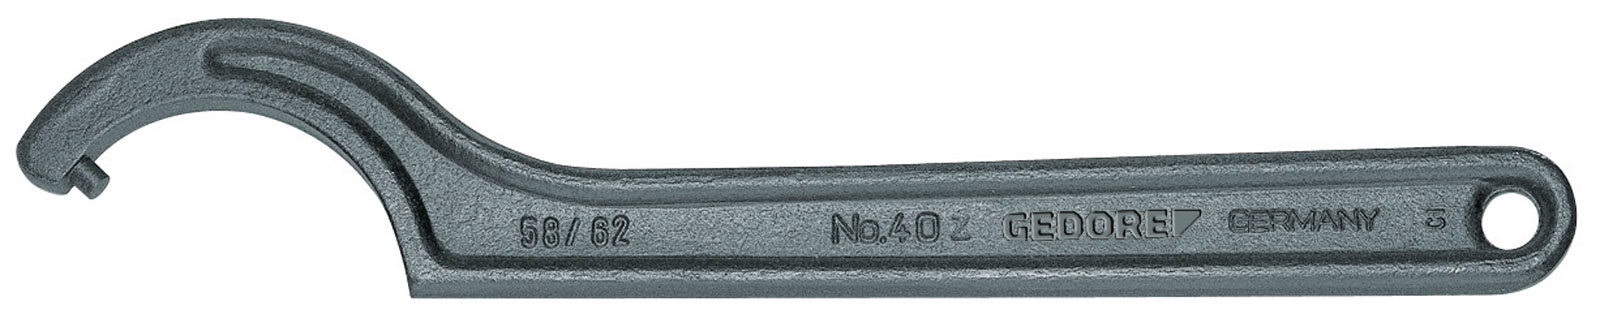 Bild von 40 Z 16-18 Hakenschlüssel, DIN 1810 Form B, 16-18 mm